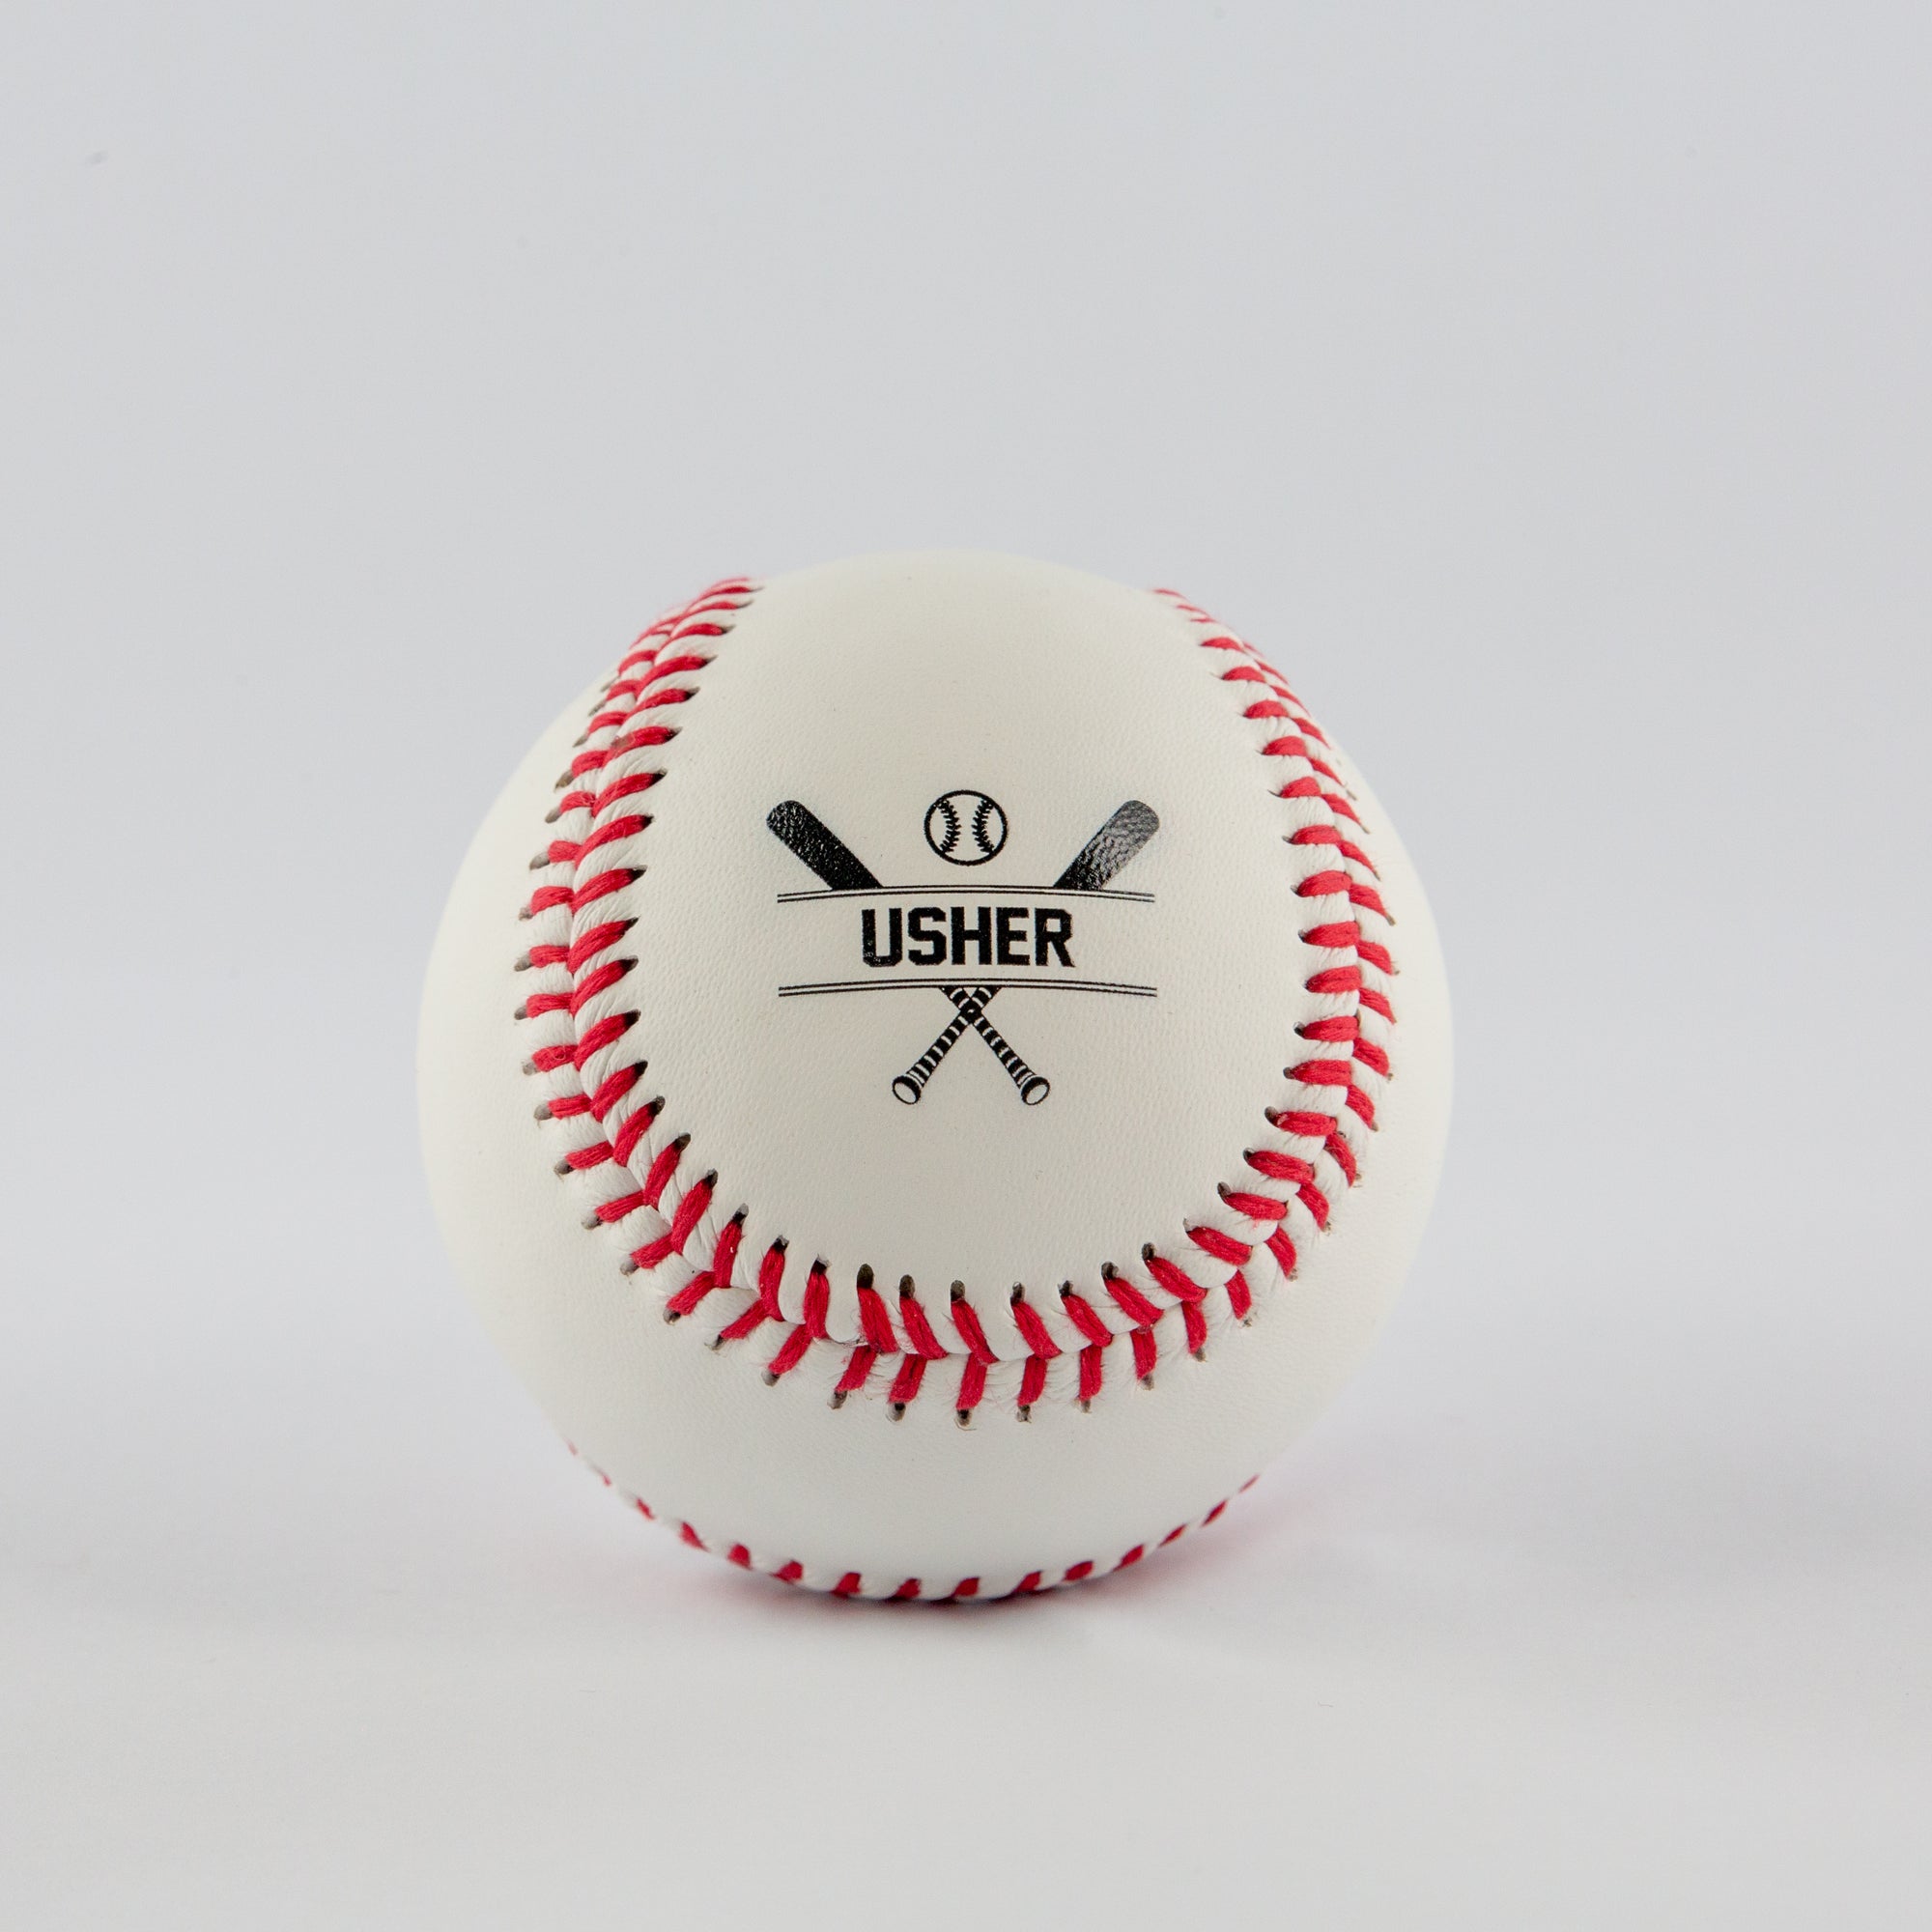 Printed Baseball with Usher Design